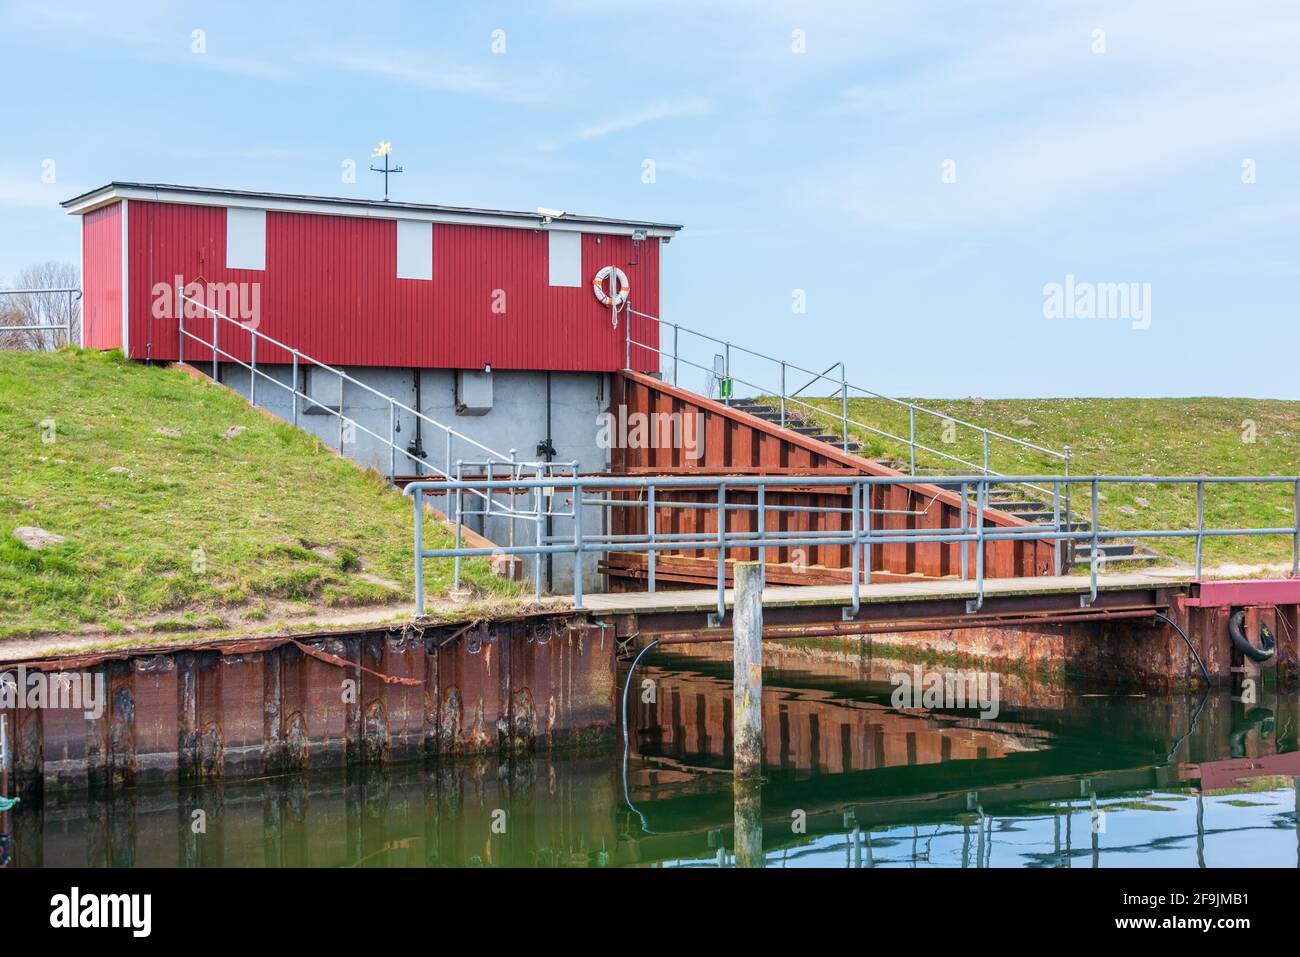 Der idyllische Hafen Lippe an der Hohwachter Bucht in Schleswig-Holstein, das Schleusengebäude am deich zum Schutz des Achterwassers Stock Photo